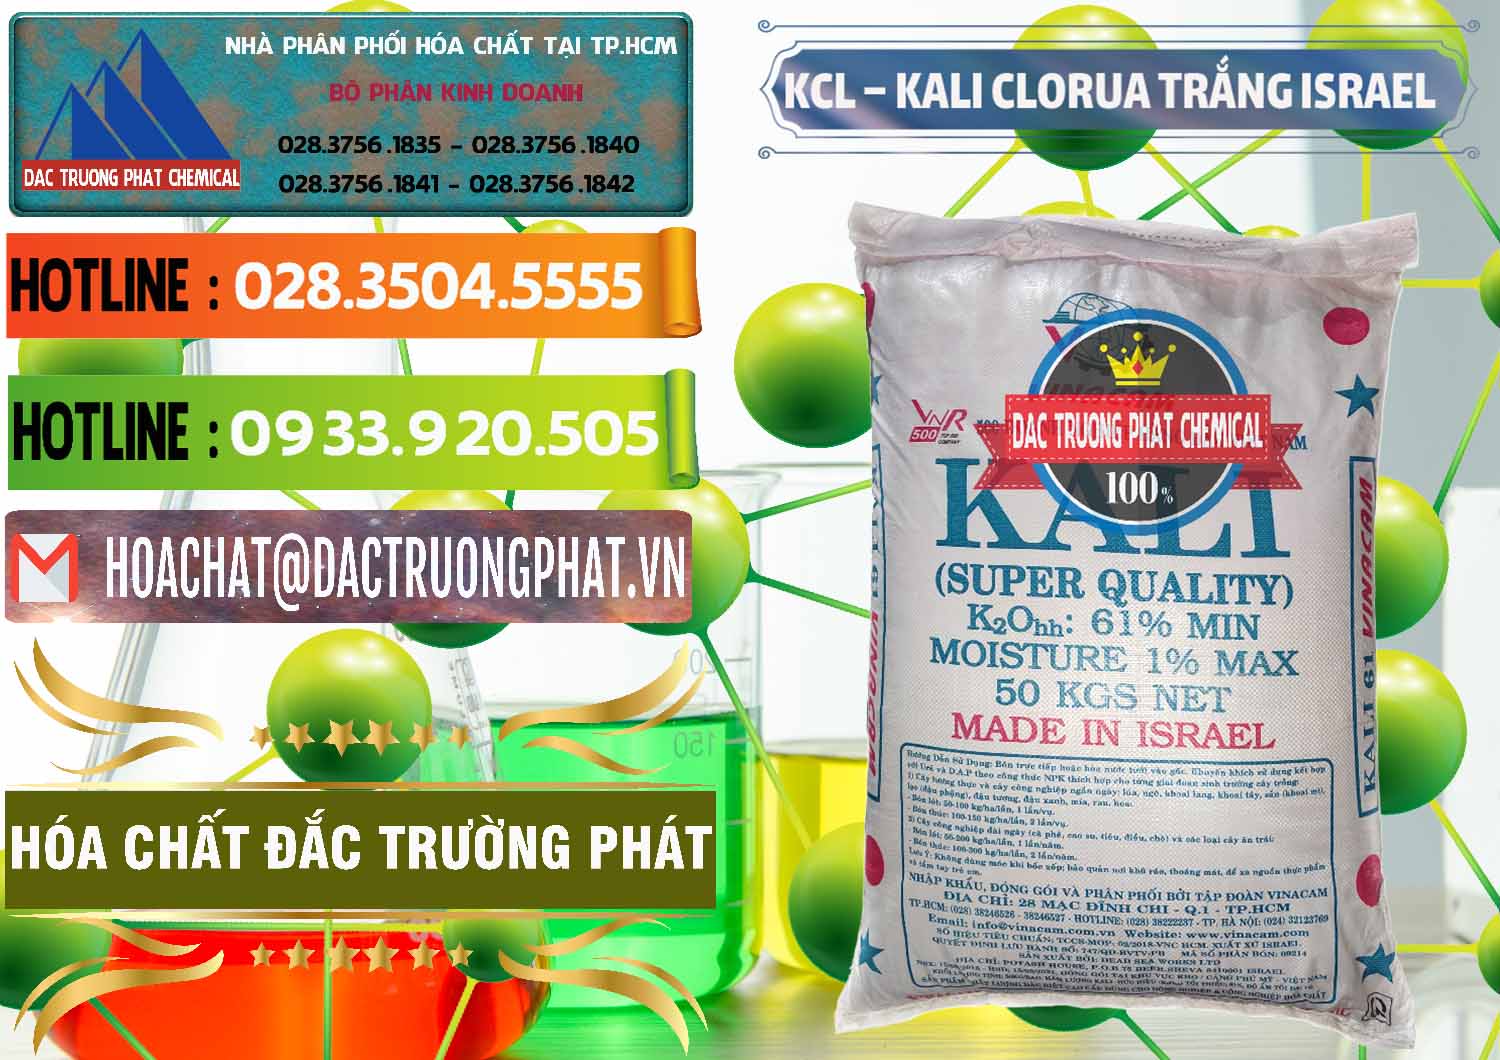 Cty chuyên bán & cung ứng KCL – Kali Clorua Trắng Israel - 0087 - Đơn vị chuyên nhập khẩu và cung cấp hóa chất tại TP.HCM - cungcaphoachat.com.vn